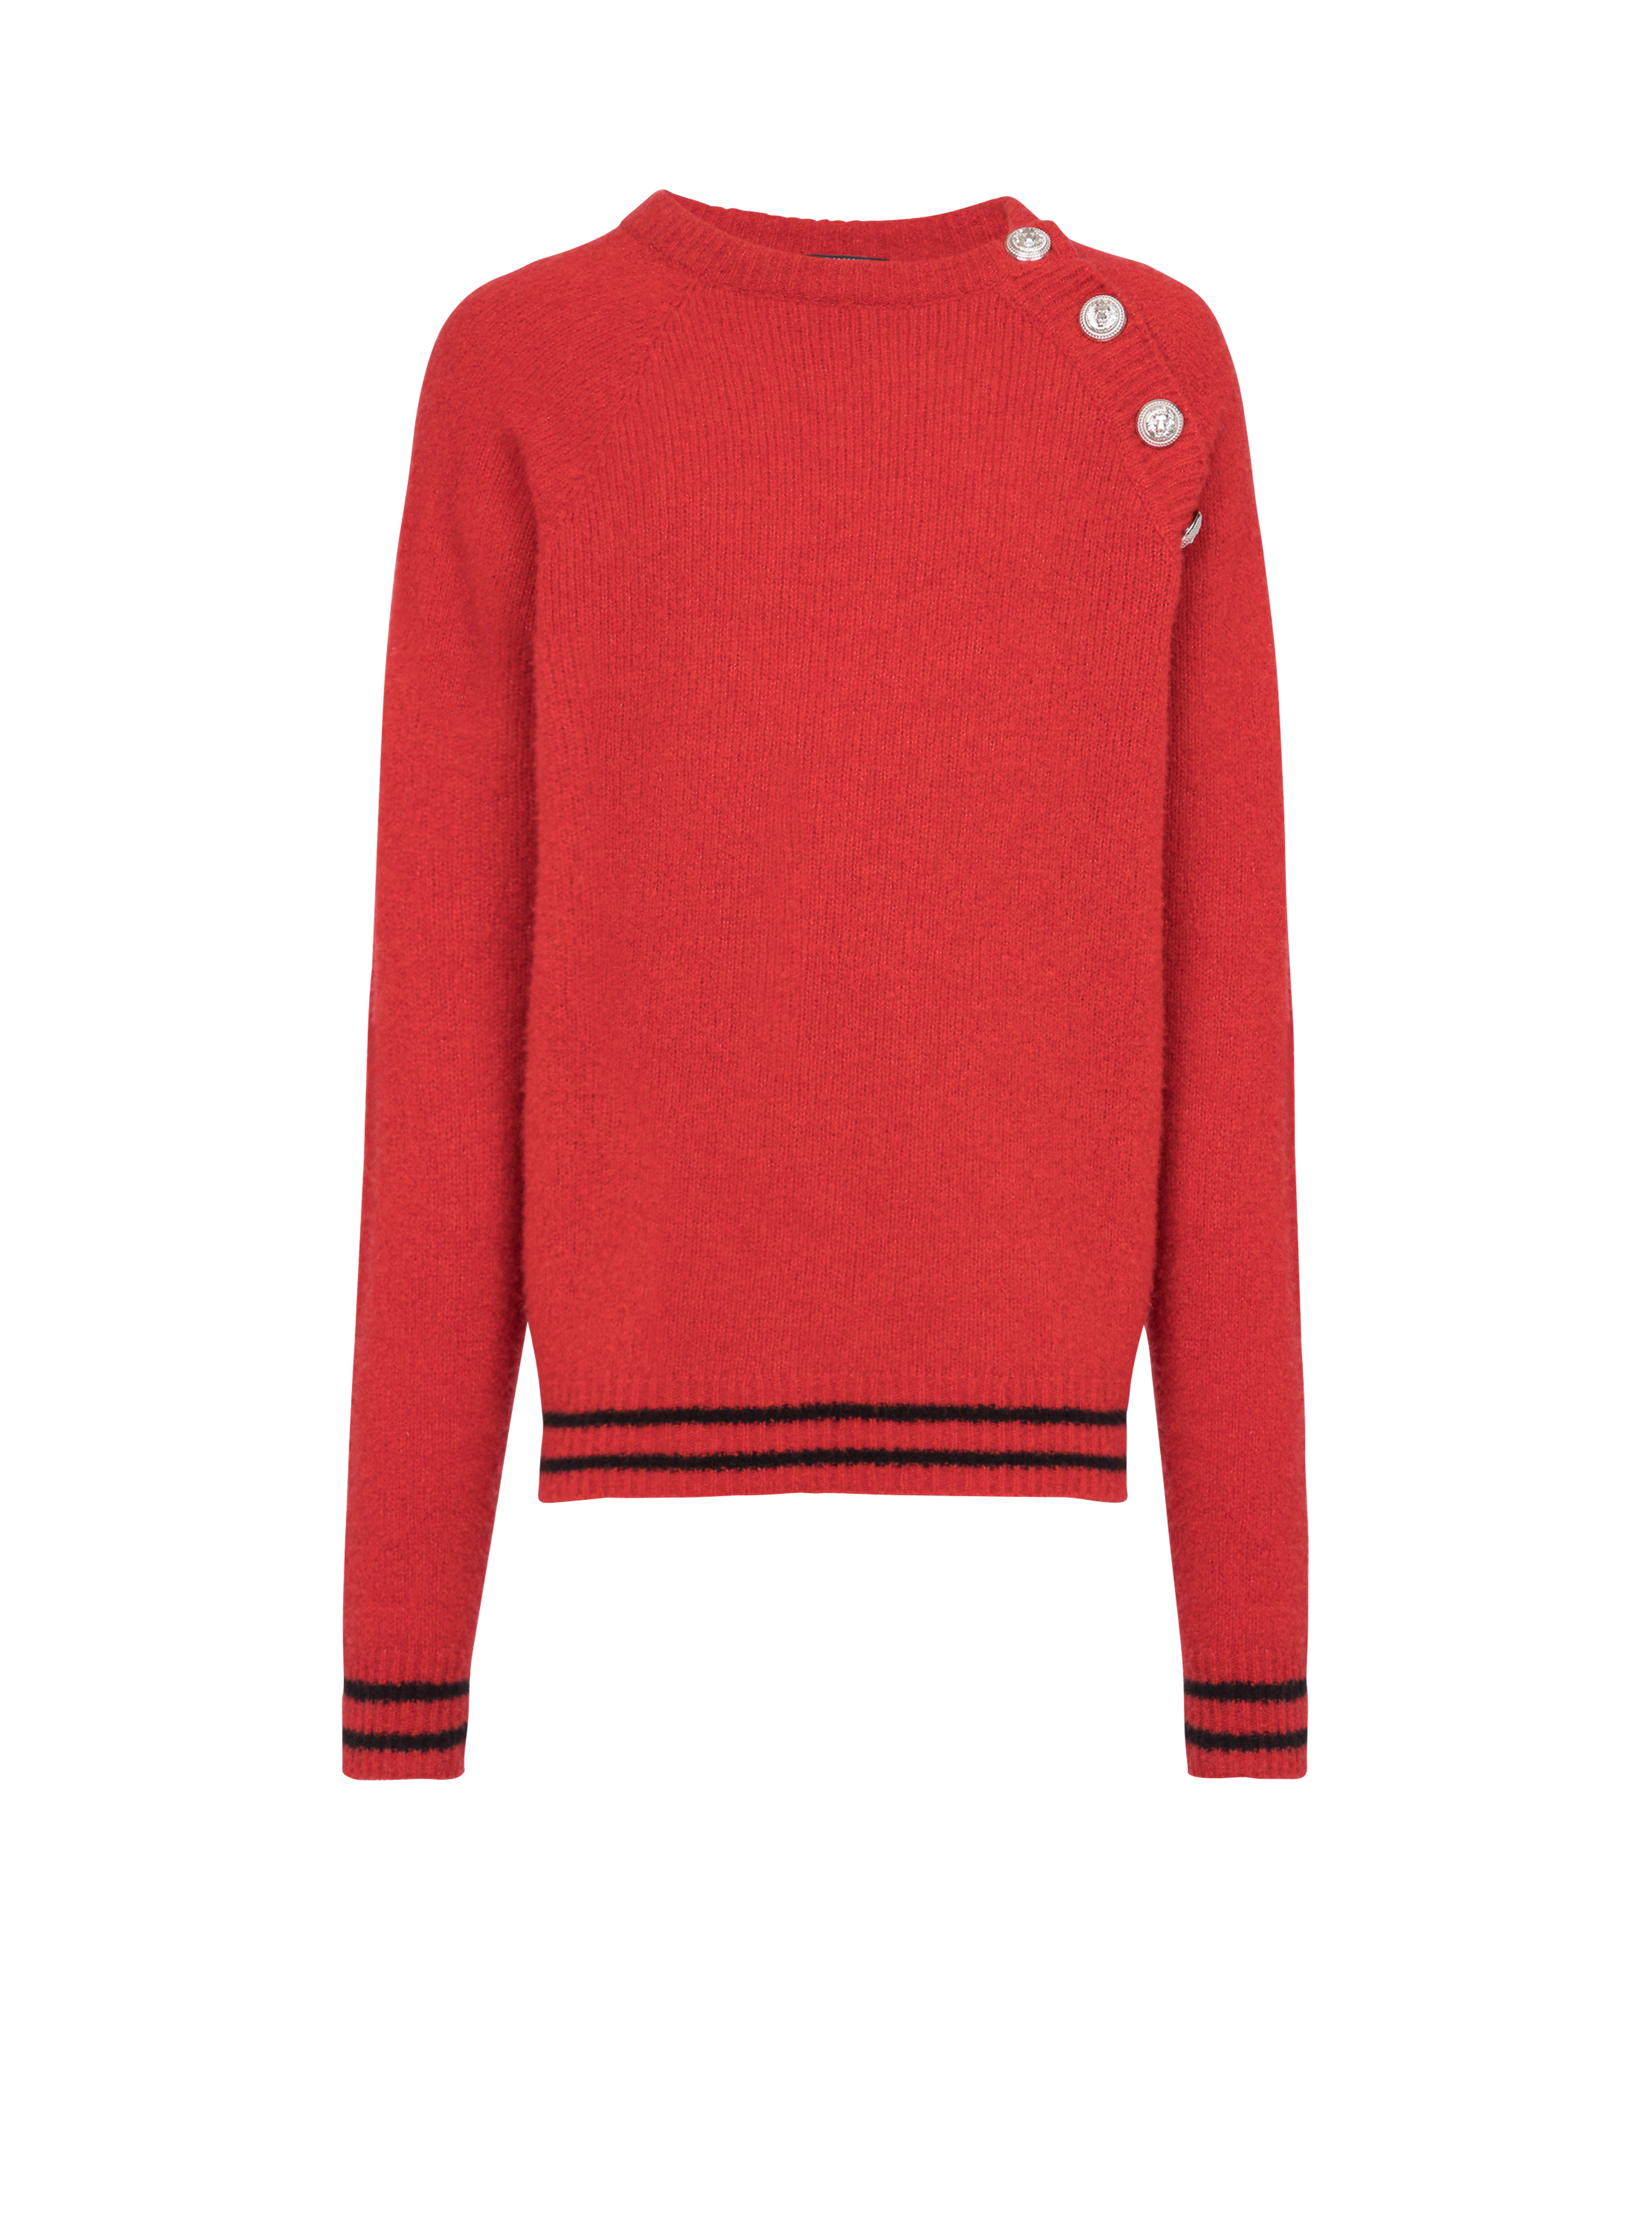 캐시미어 스웨터, red